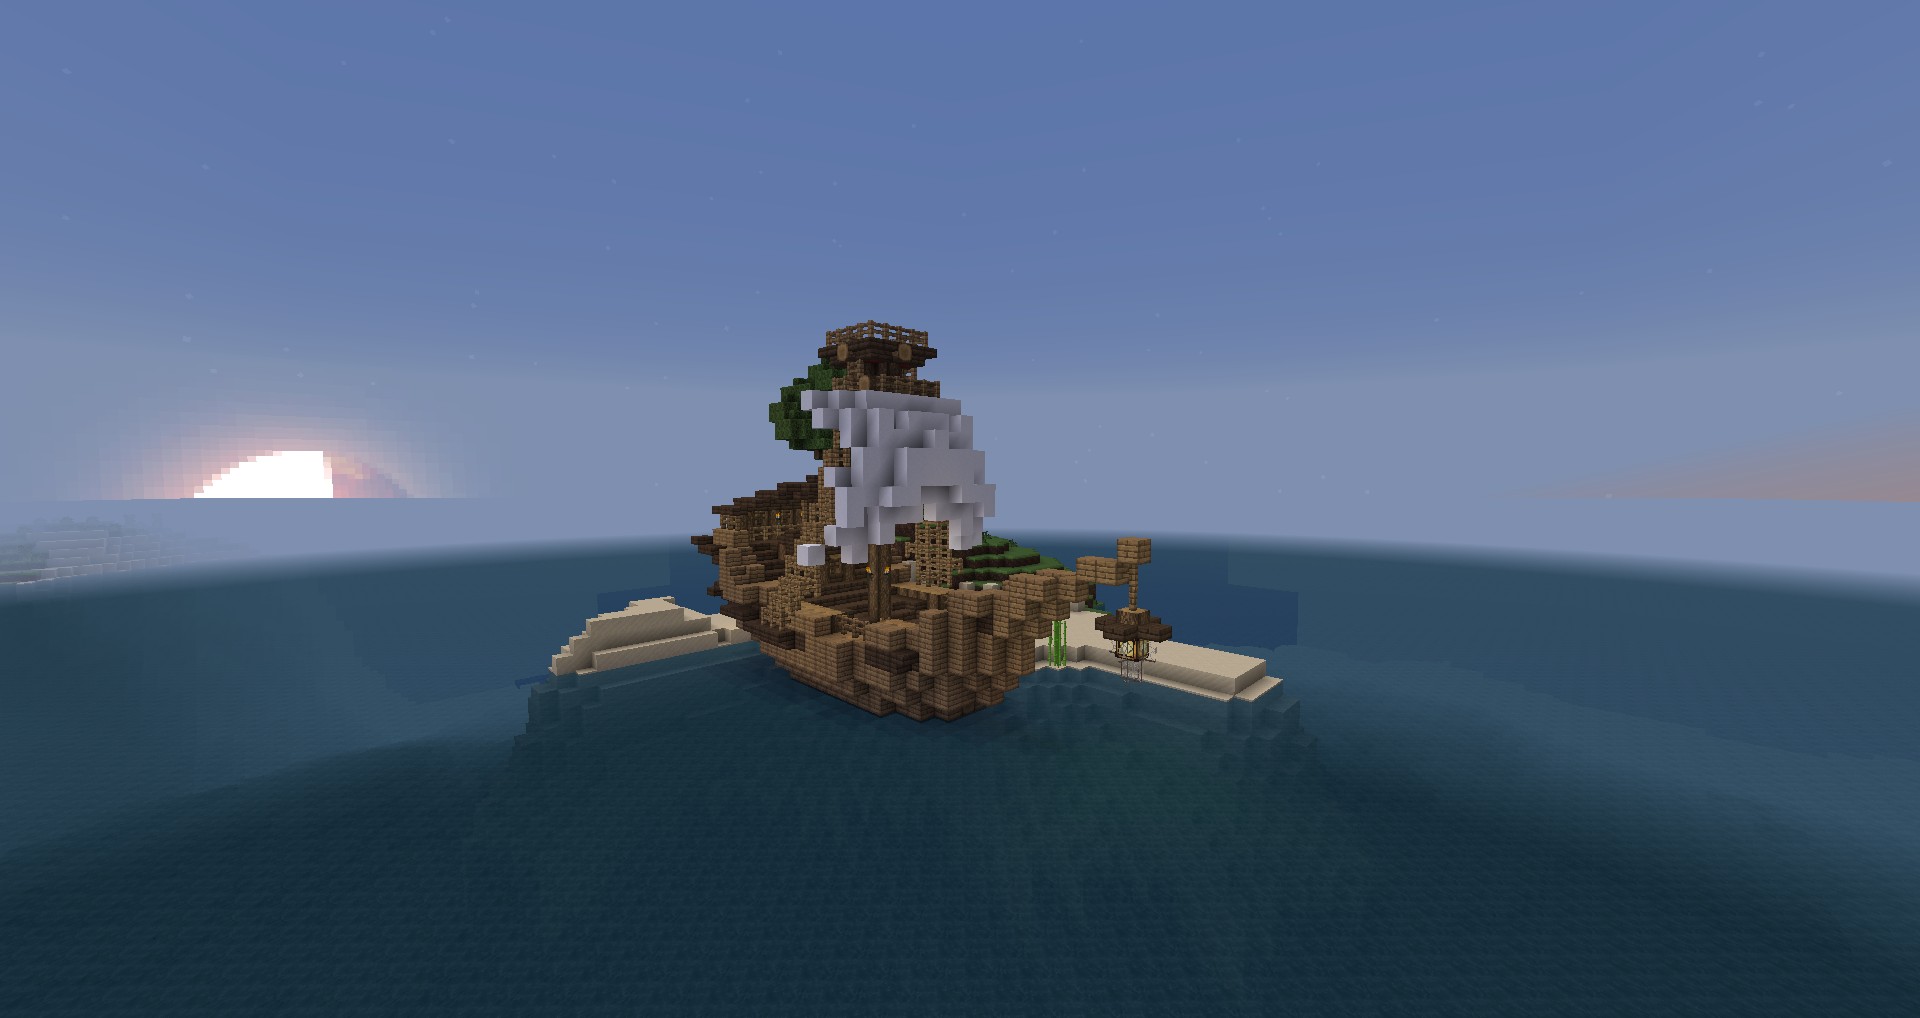 小品建築 小船隻 一瞬間靈感2 Minecraft 我的世界 當個創世神 哈啦板 巴哈姆特